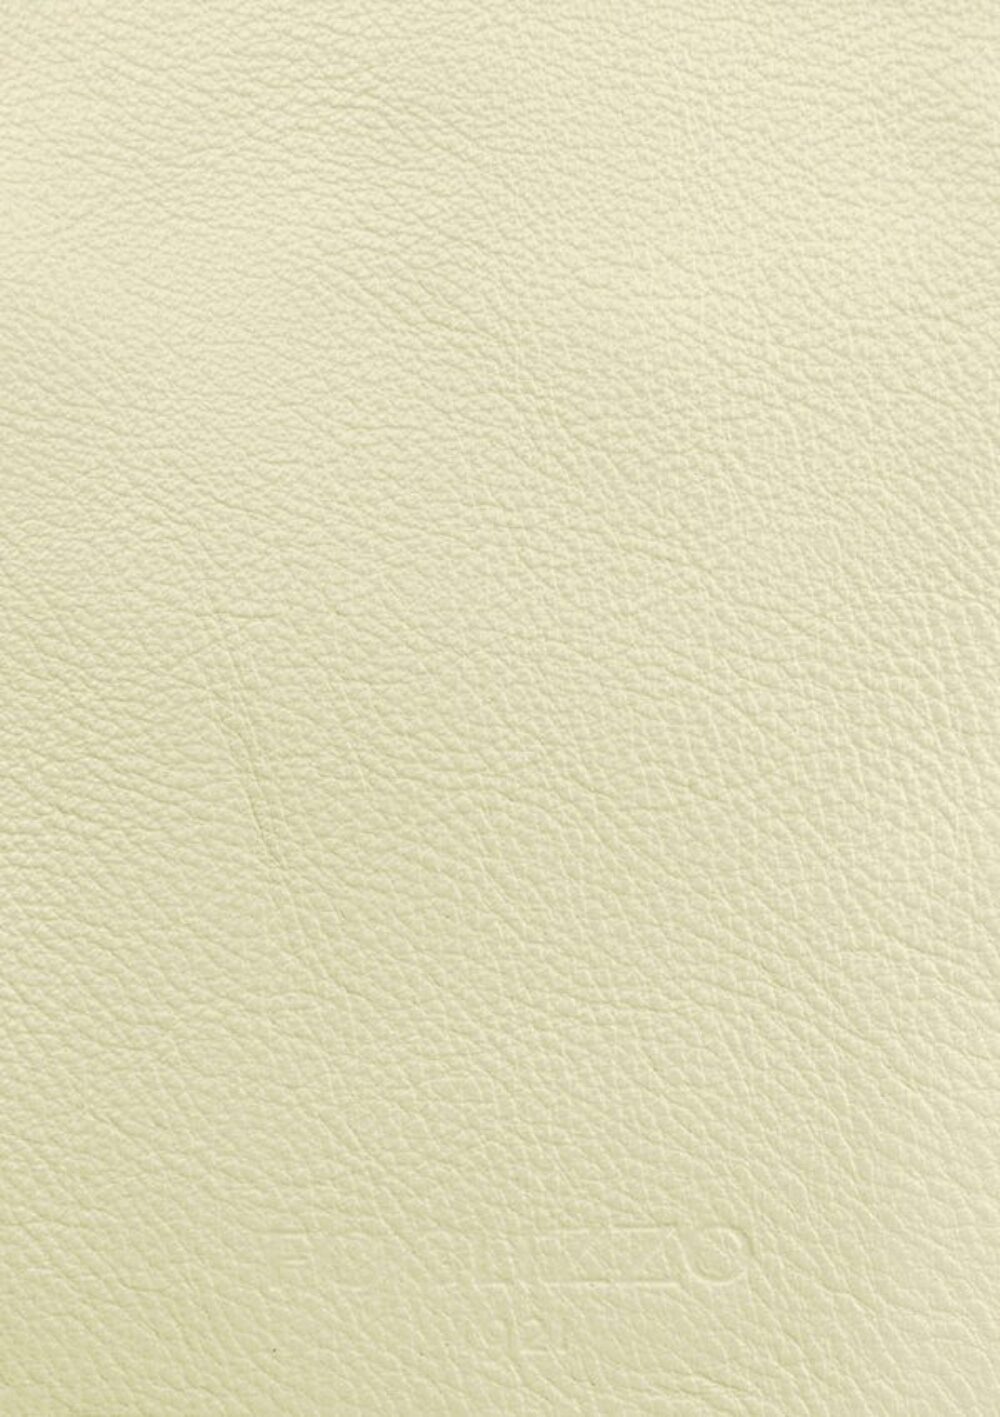 Luxusdesign und hochwertige Teppiche nach Maß • Yellow Pearl White Jade